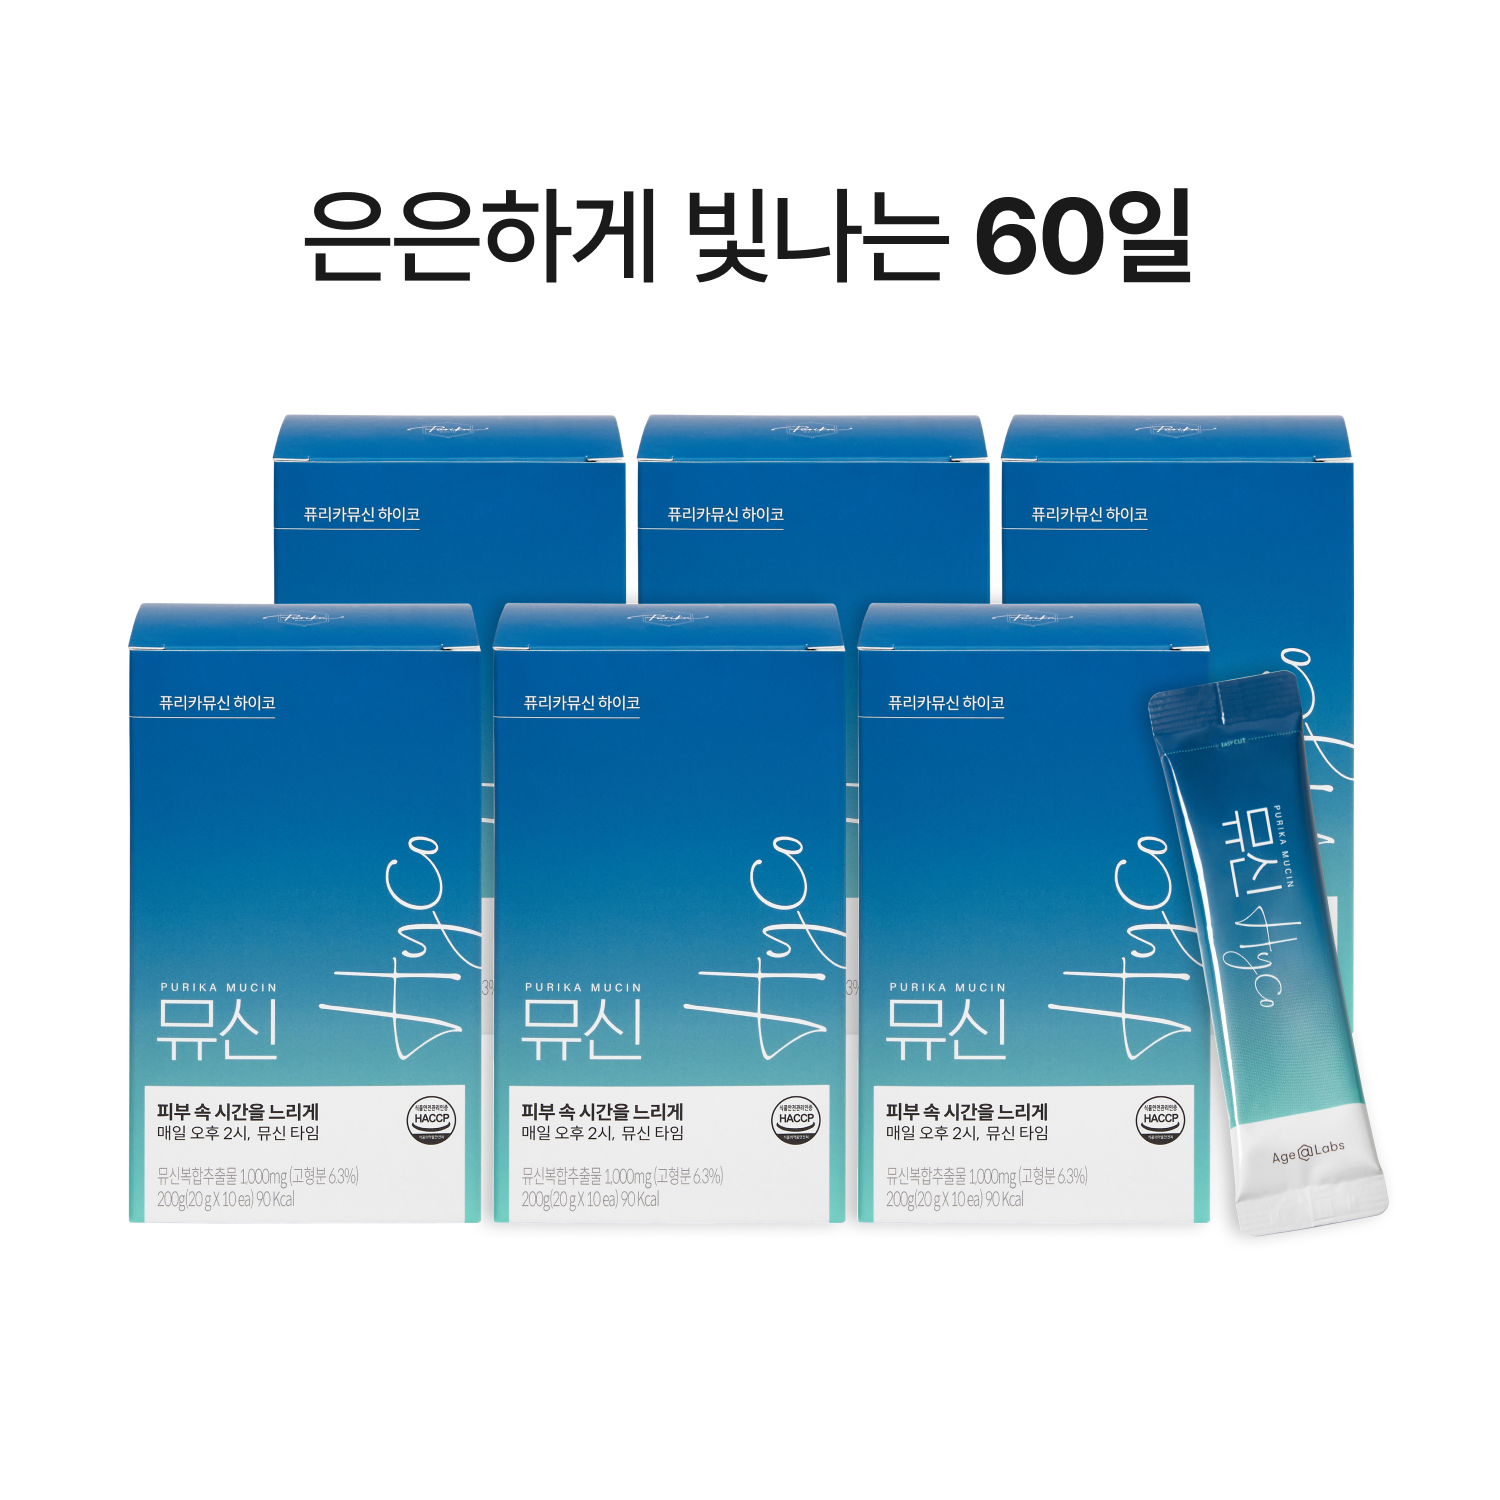 뮤신Hyco (6box, 60일)